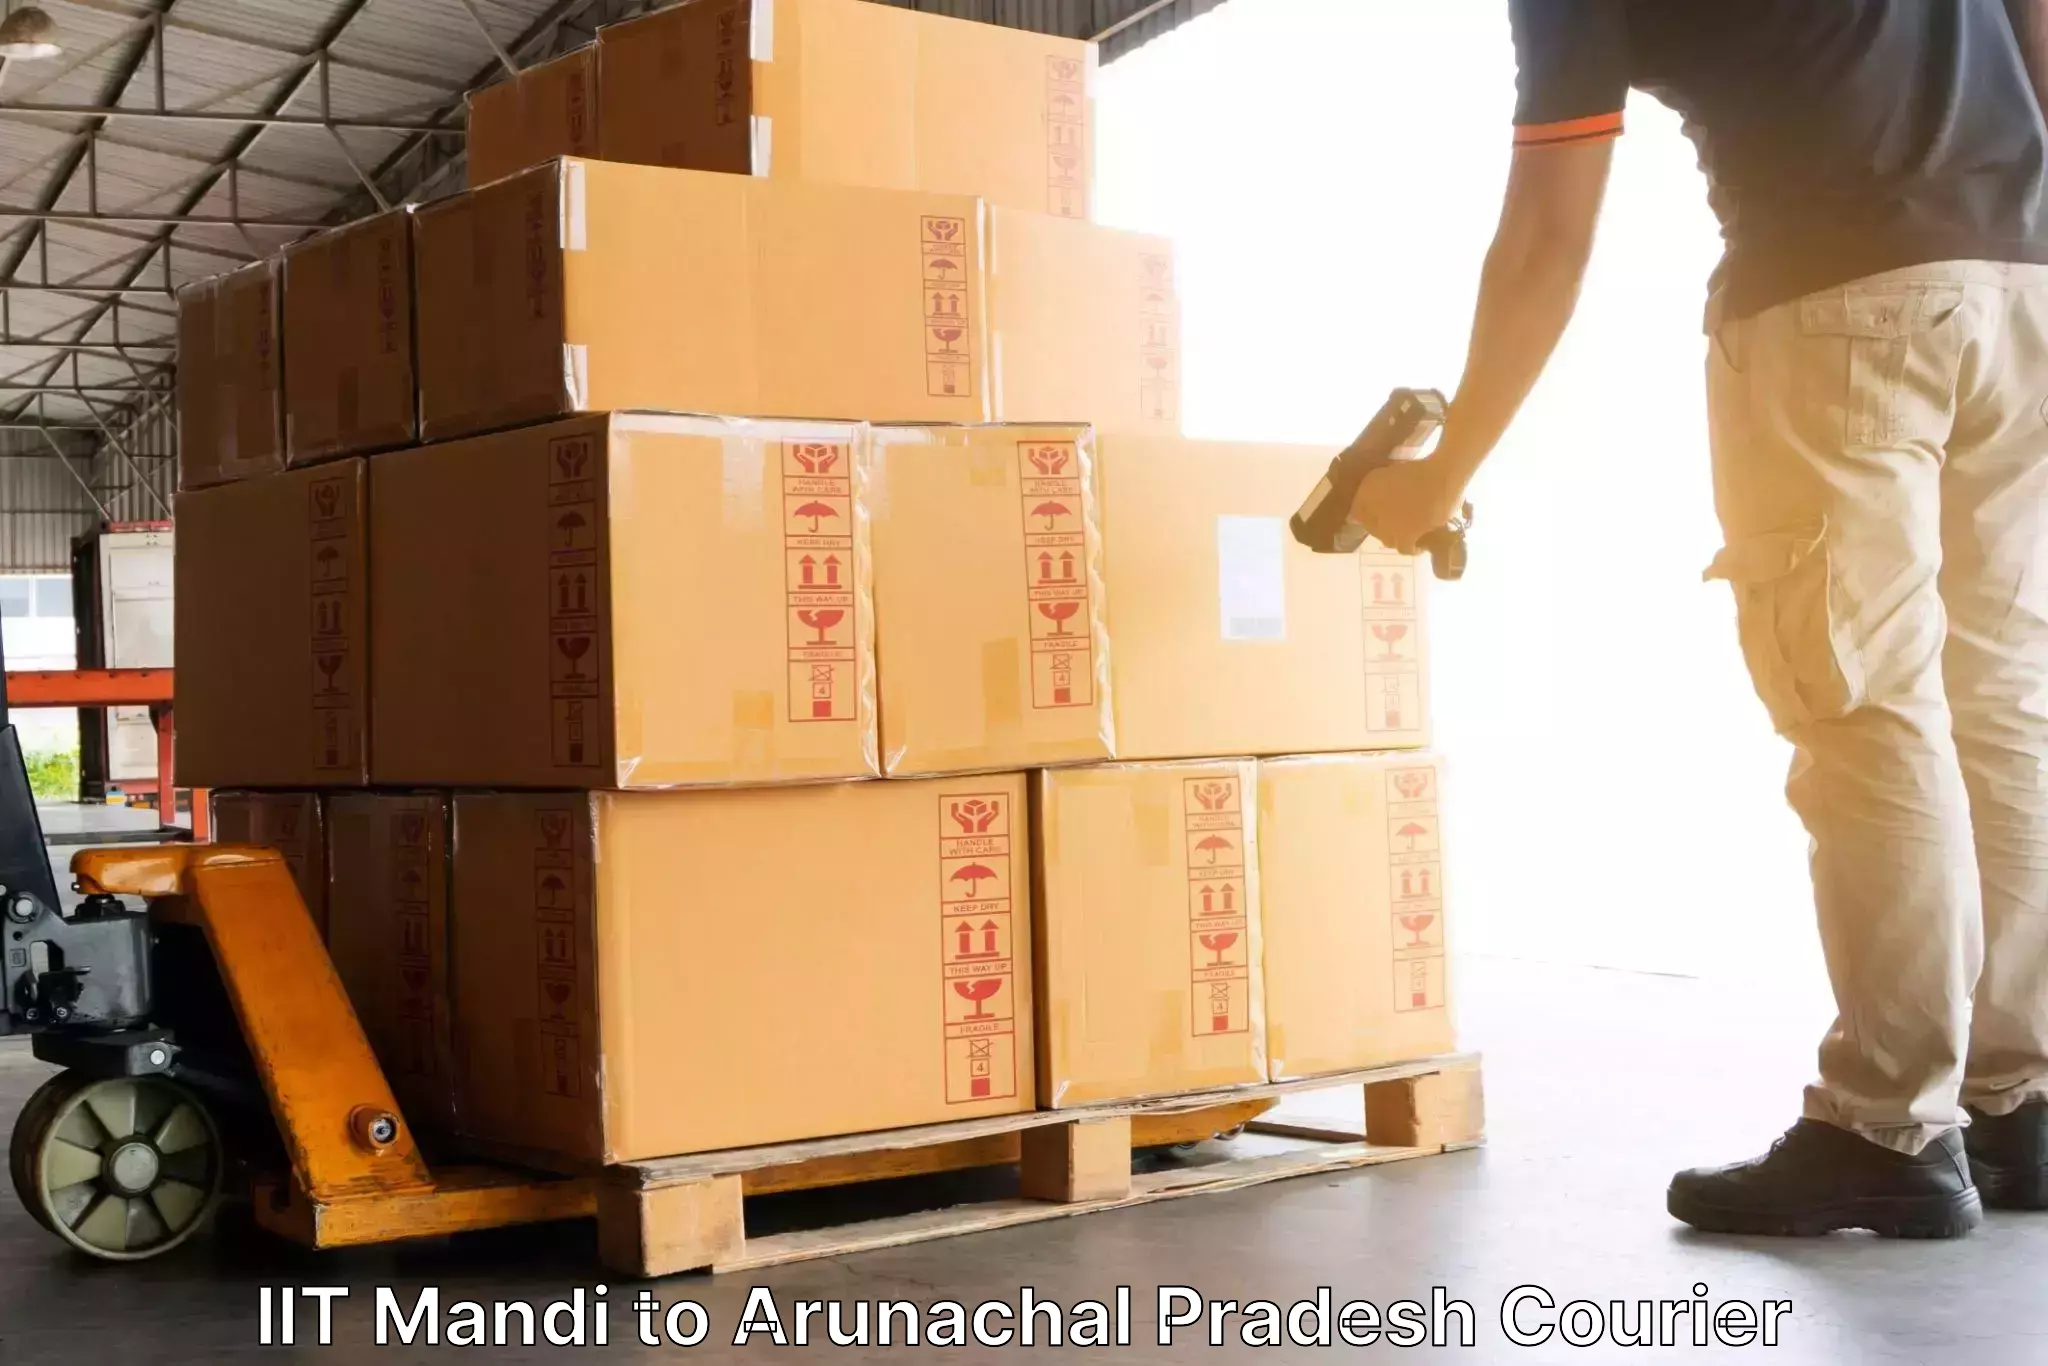 Next day courier IIT Mandi to Arunachal Pradesh